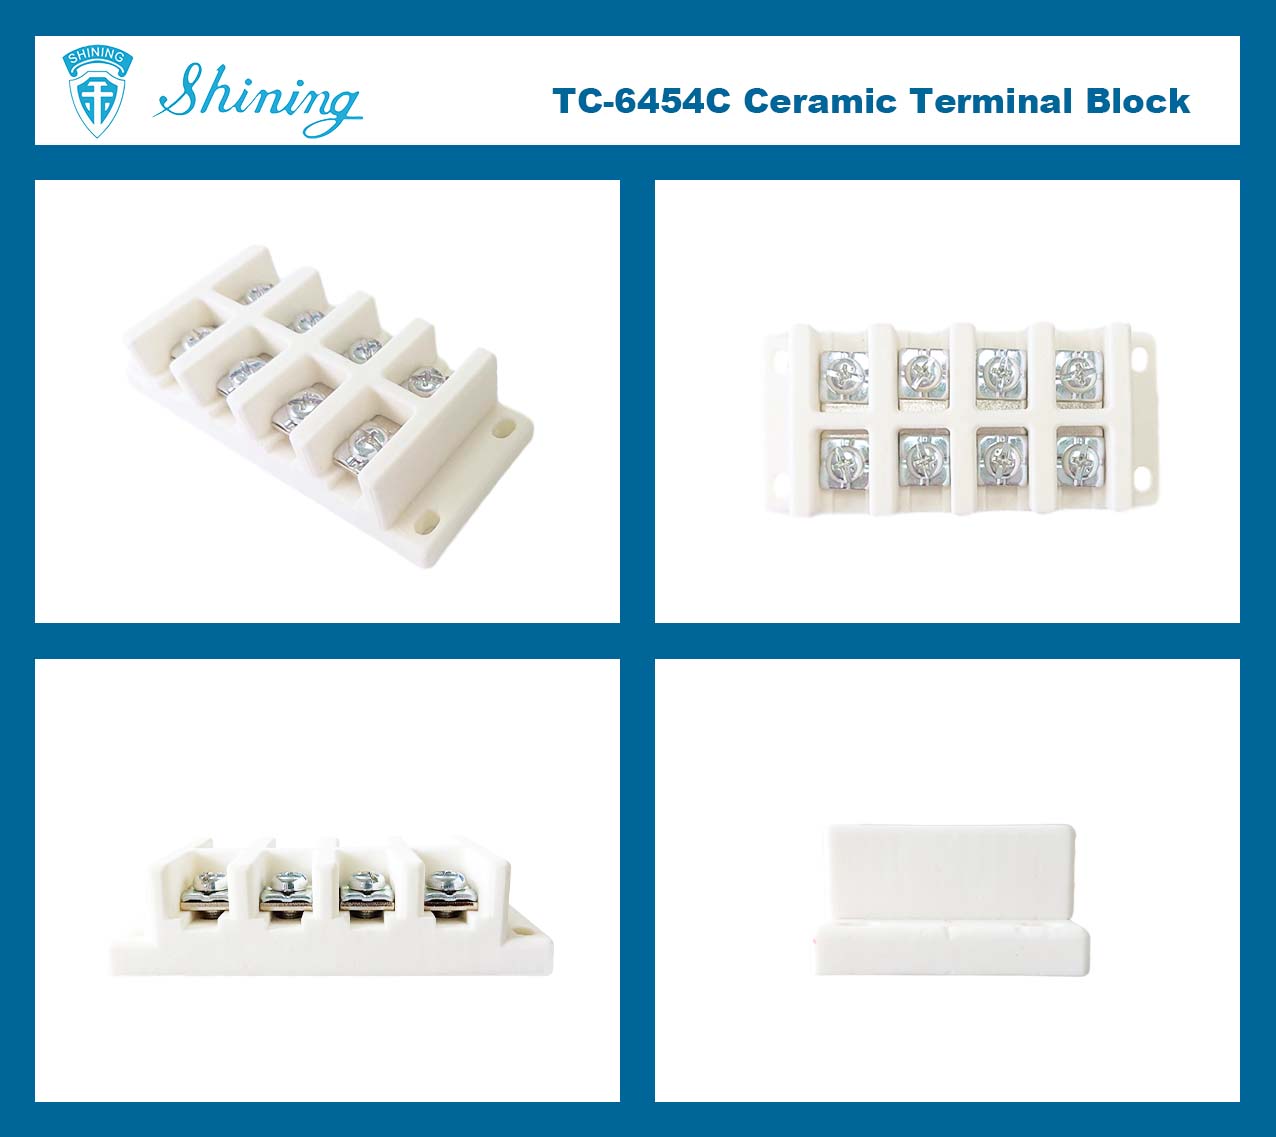 @$600V_45A_Terminal_Block$@TC-6454C_&lt;TC-6454C Panel Mounted 600V 45A 4Poles Ceramic Terminal Block&gt;